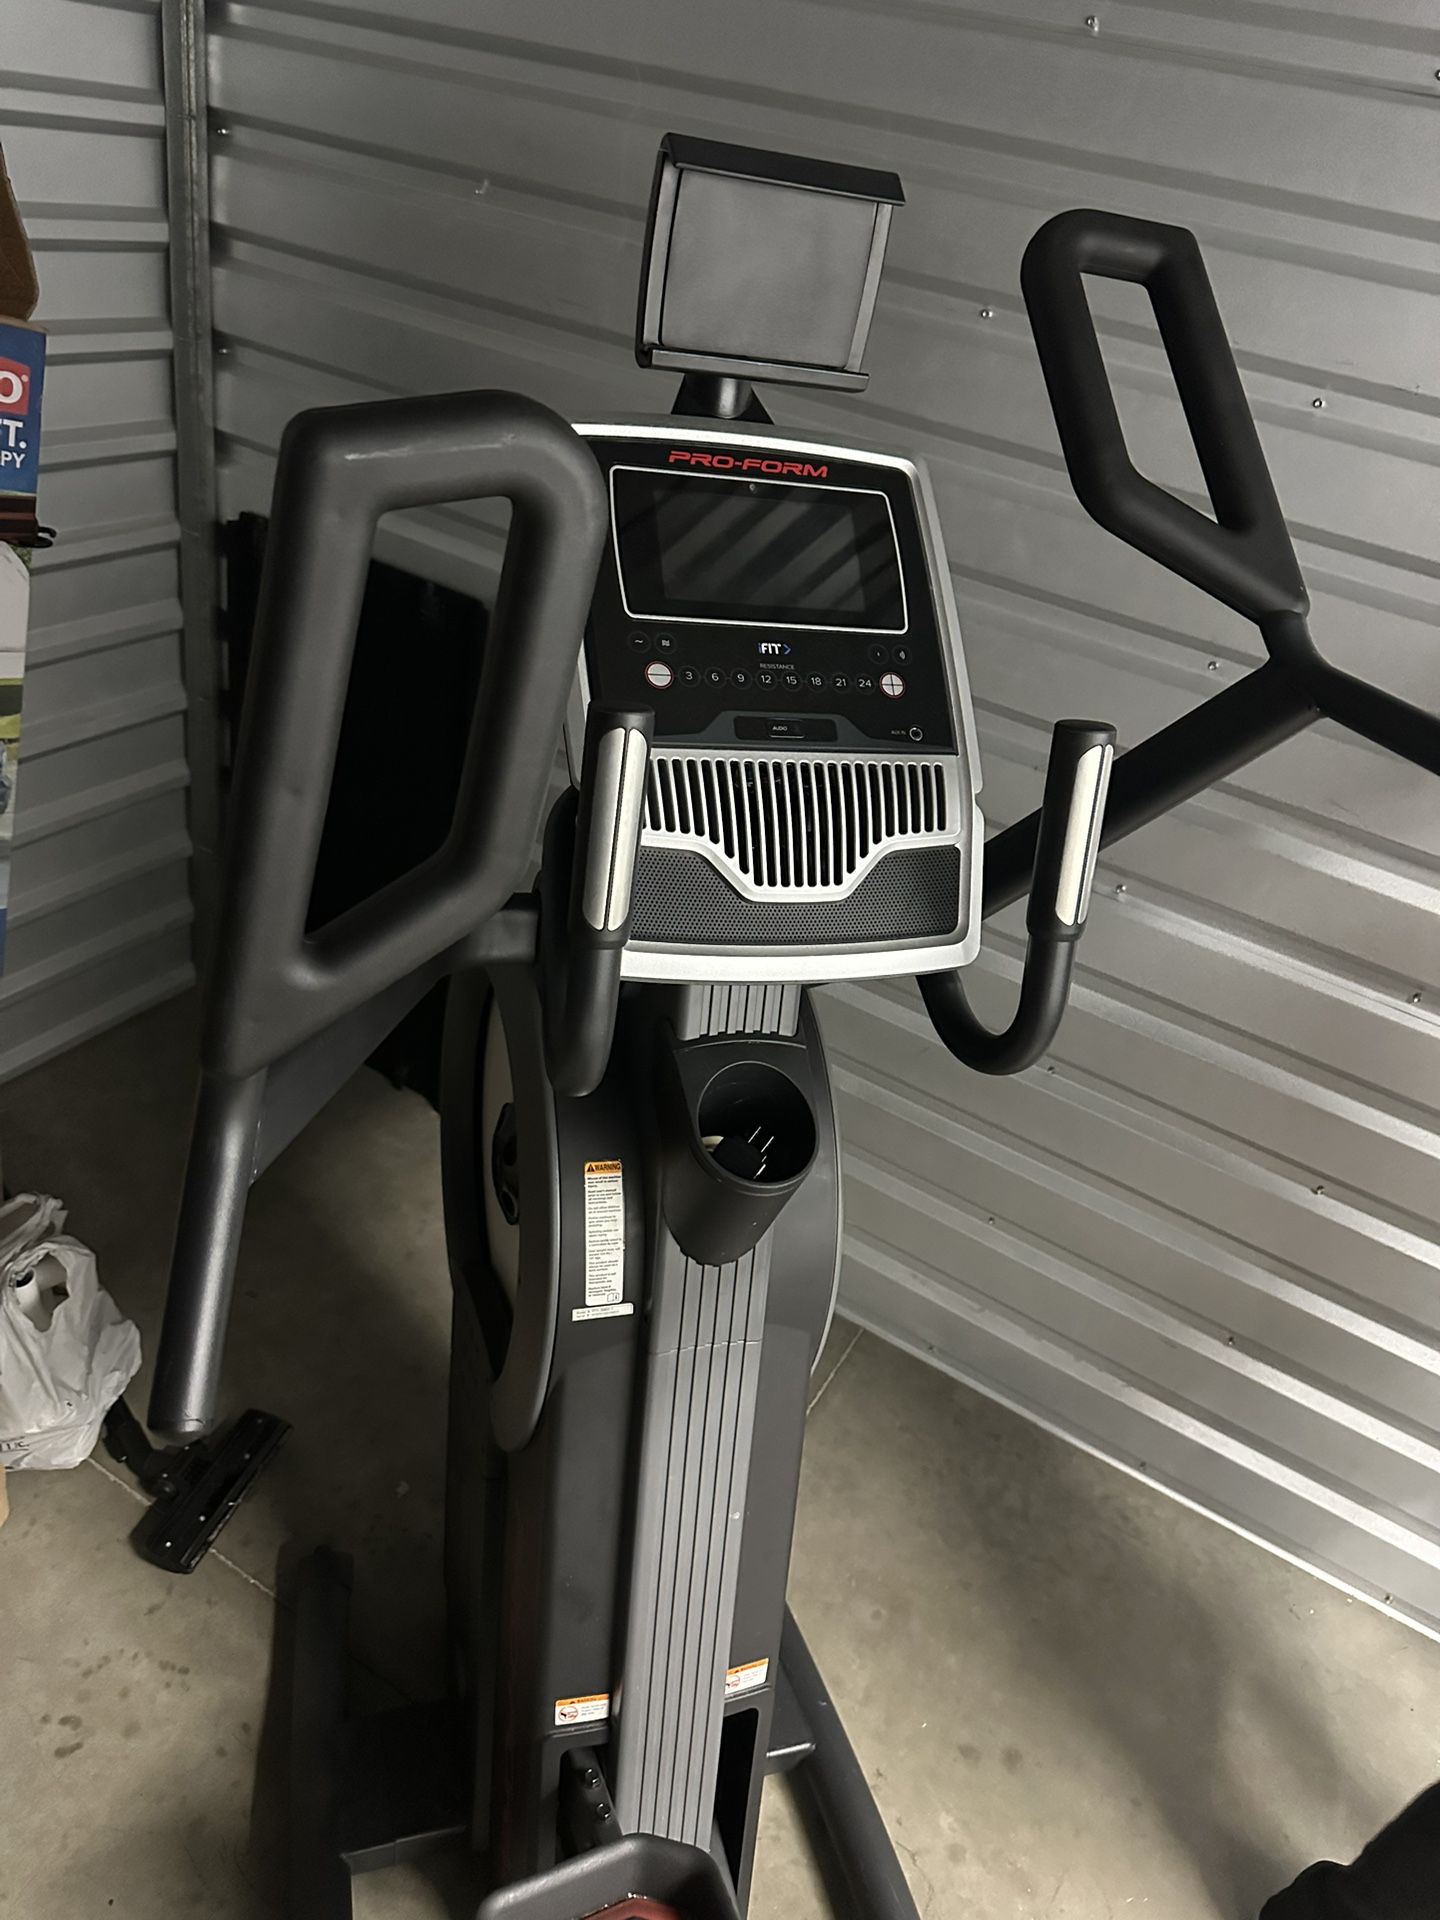 Pro Exercise Machine 